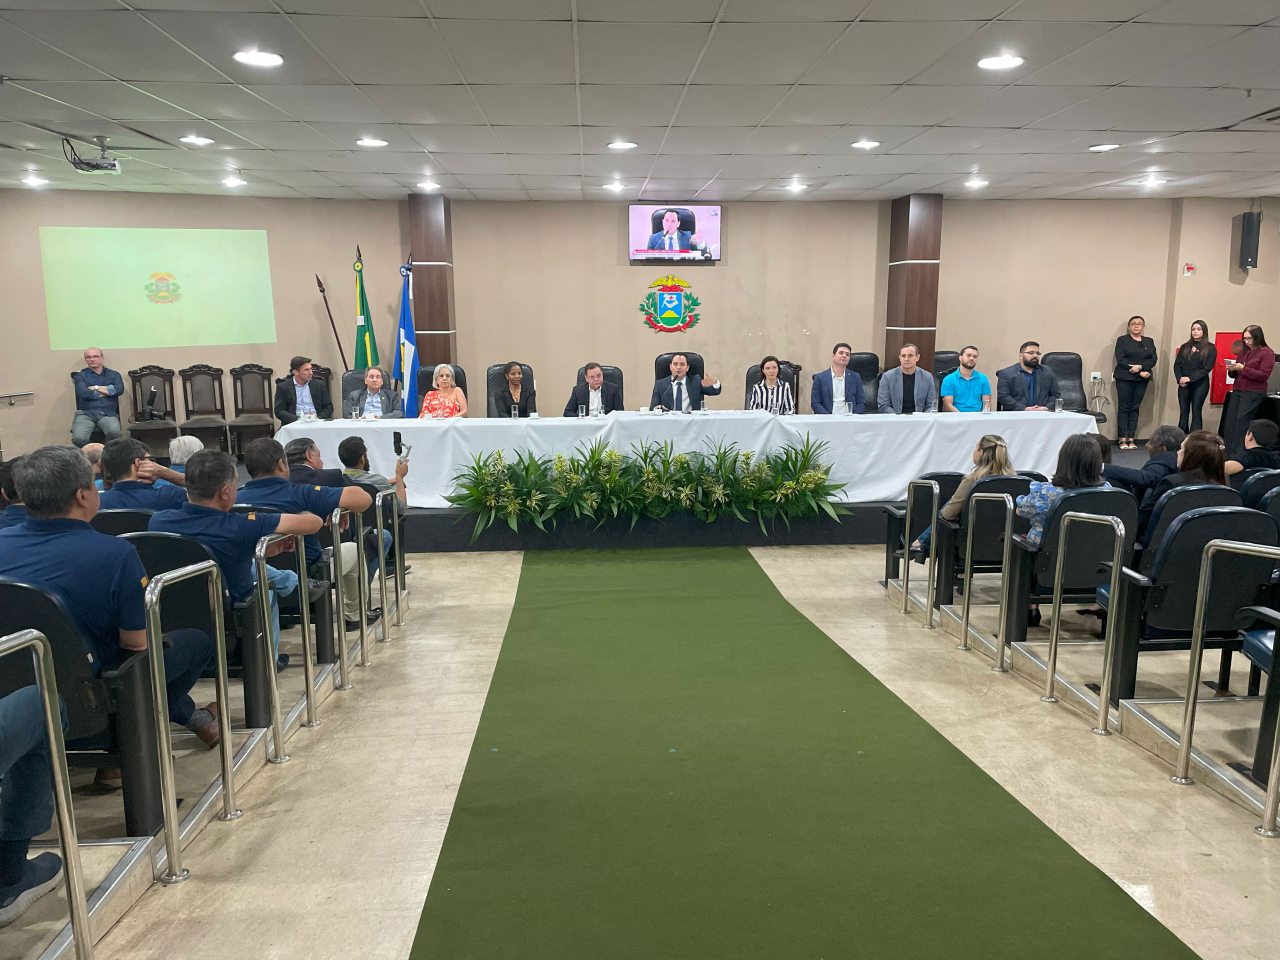 Assembleia Legislativa do Estado de Mato Grosso